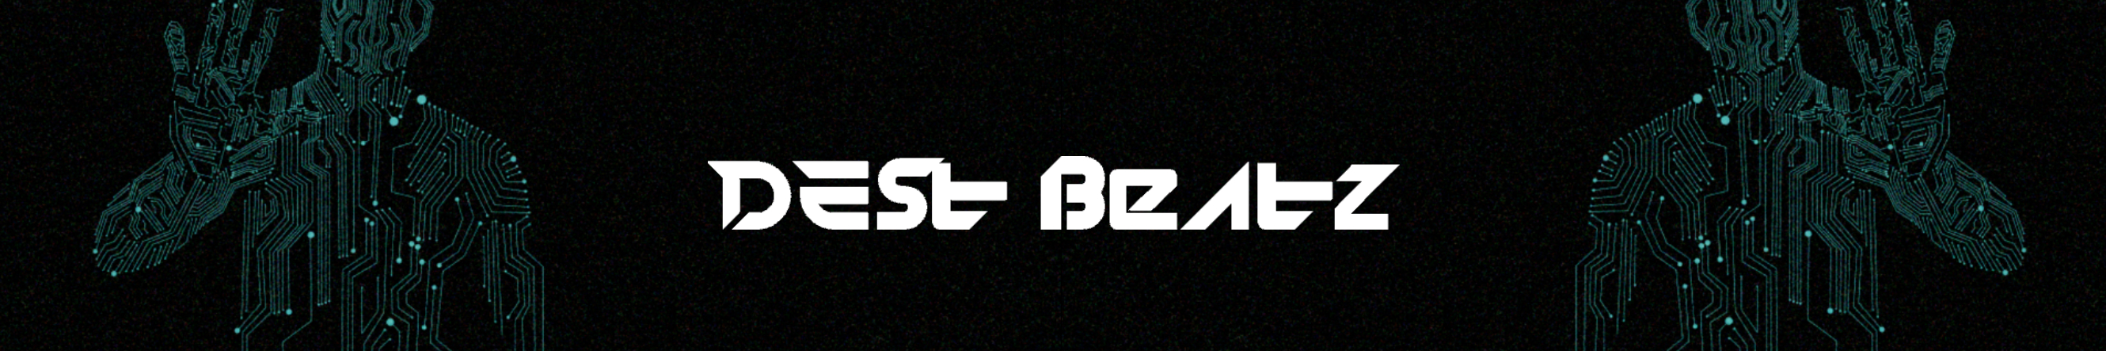 Dest Beatz